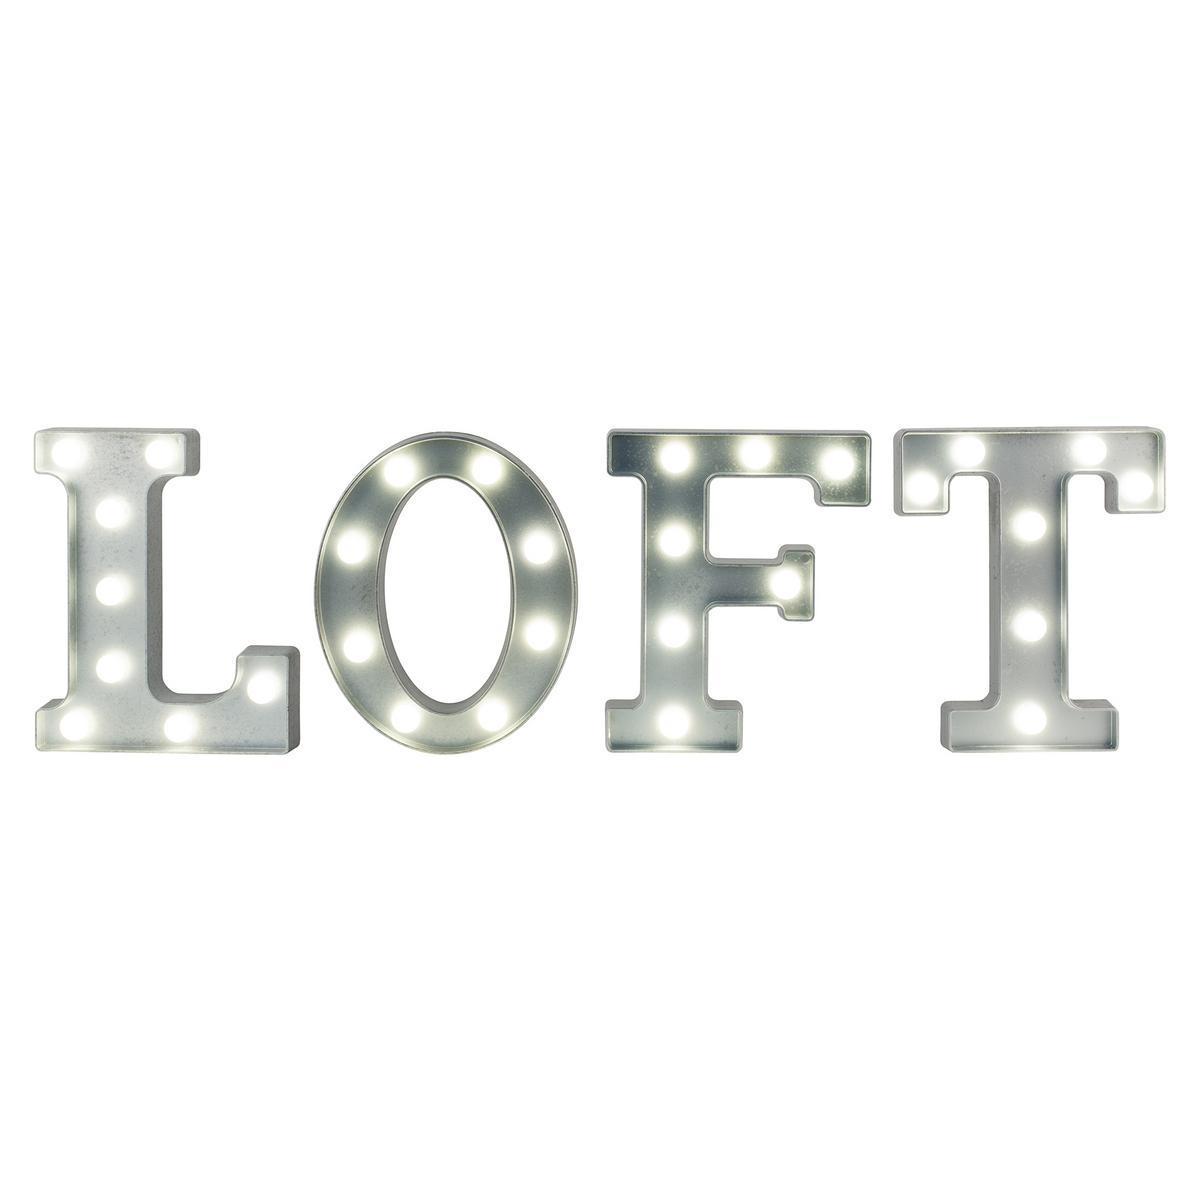 Loft lumineux - Plastique - 78 x 4,5 x H 23 cm - Noir